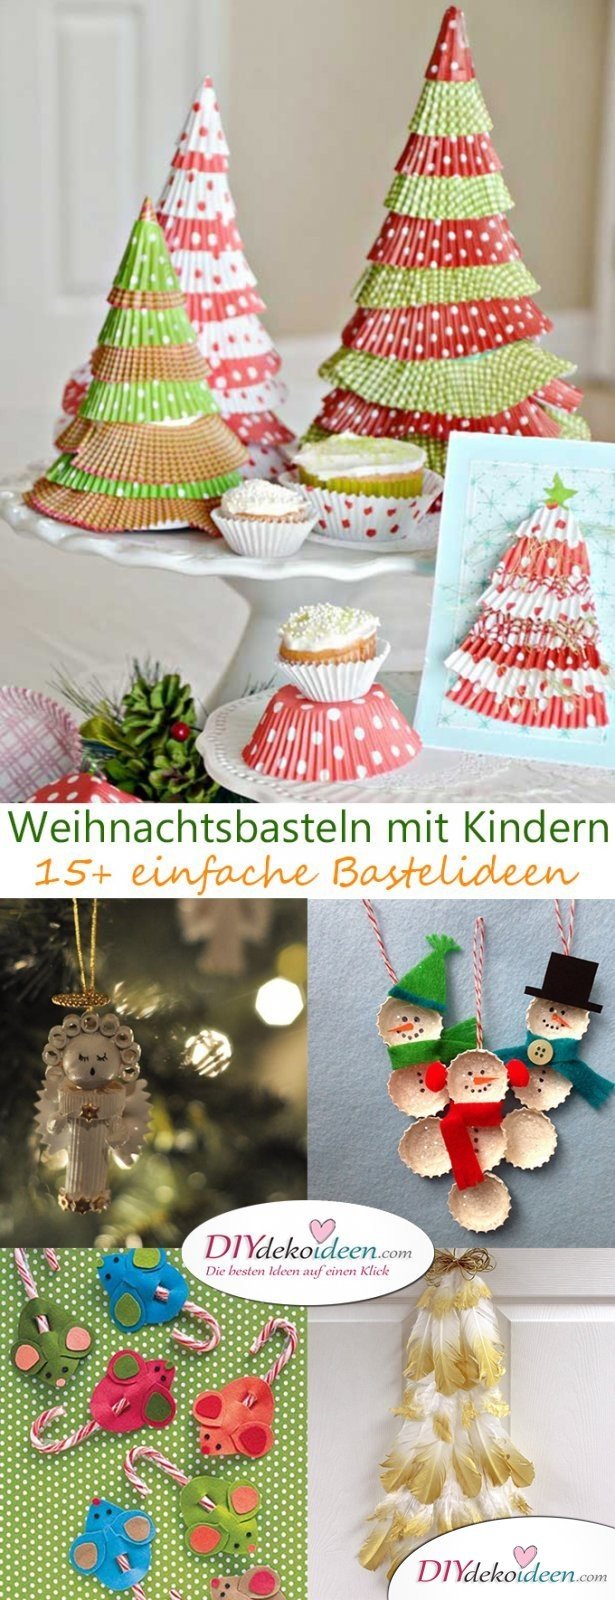 Nudelengel, Kronkorkenschneemann und Co. - Weihnachtsbasteln mit Kindern - 15+ DIY Bastelideen